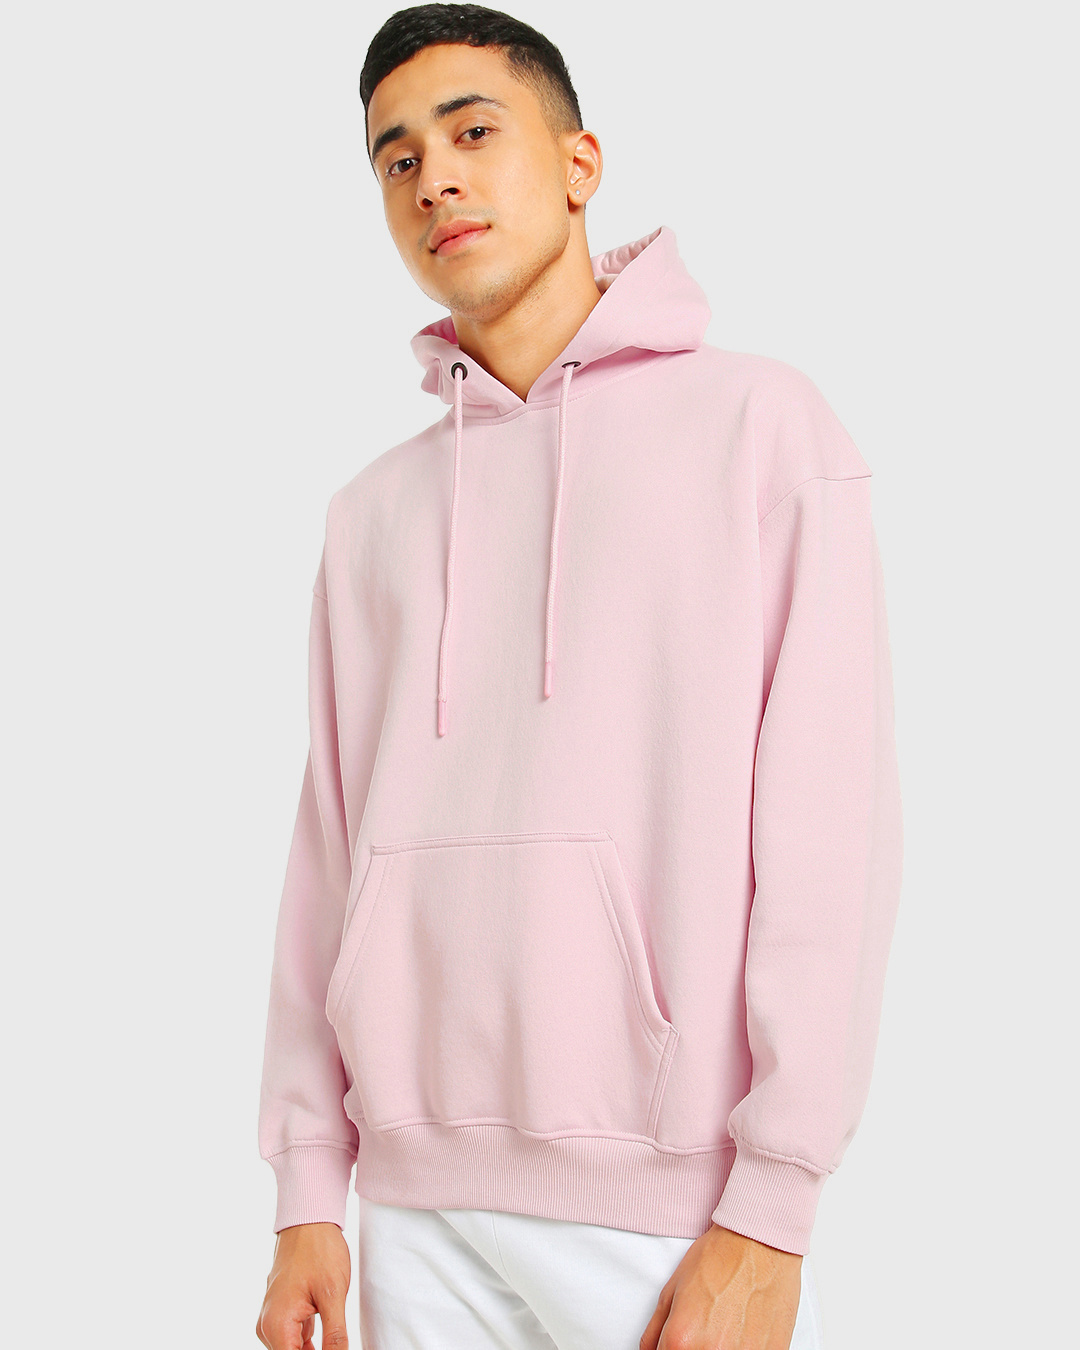 Buy Men's Pink Oversized Hoodie Online at Bewakoof